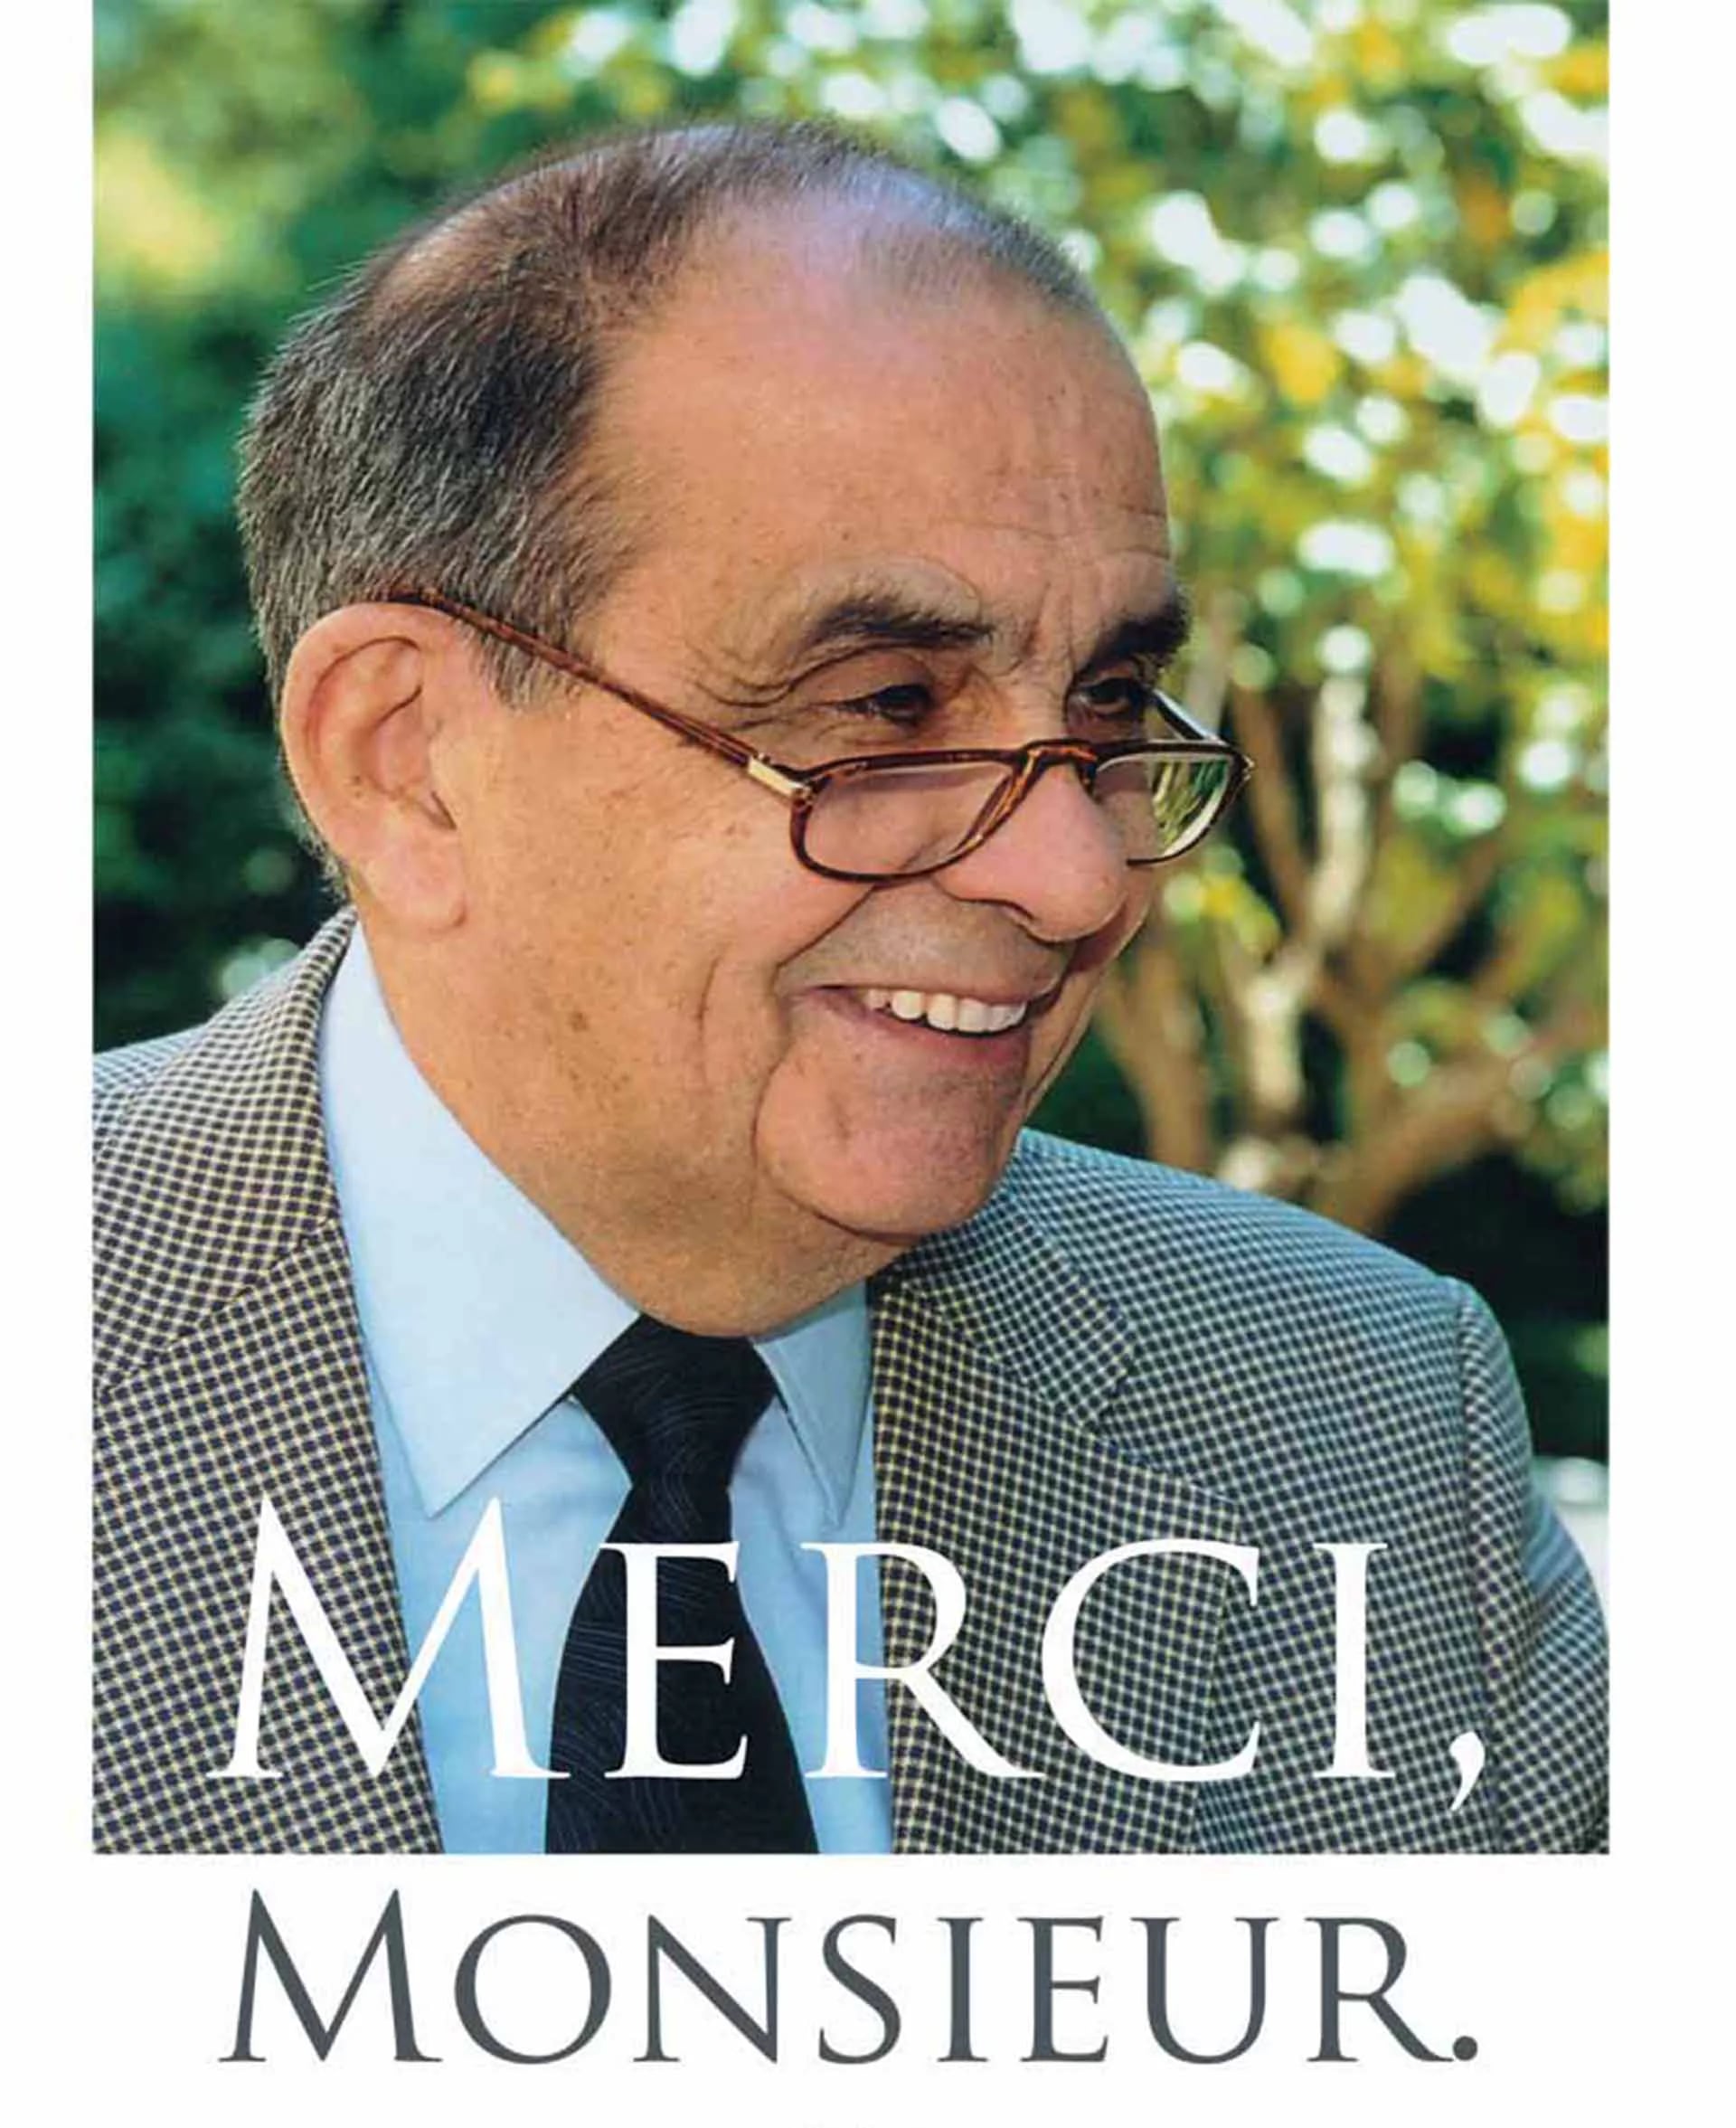 Cuando Fabre murió en 2013, el suroeste francés se tiñó de luto. Esta foto con la leyenda “Merci, Monsieur” recorrió las calles y casas por mucho meses. Aún hoy se lo considera un padre de la zona.